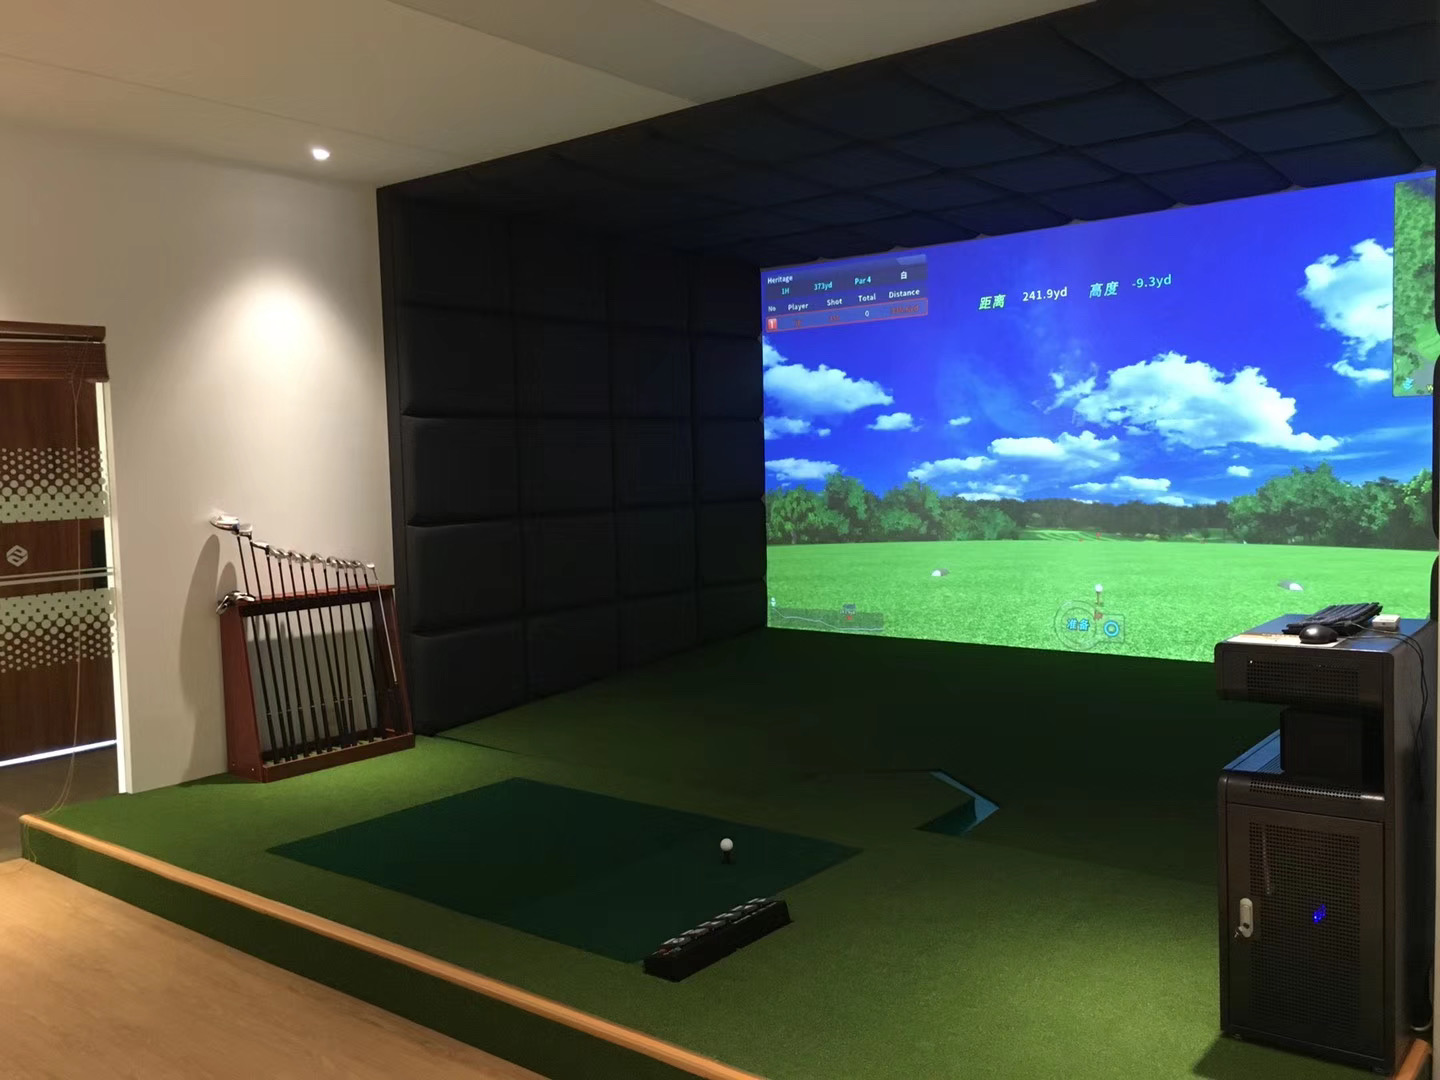 yunyidagolf室内高尔夫模拟器专业品牌体育用品市场份额越来越大品质和技术创新